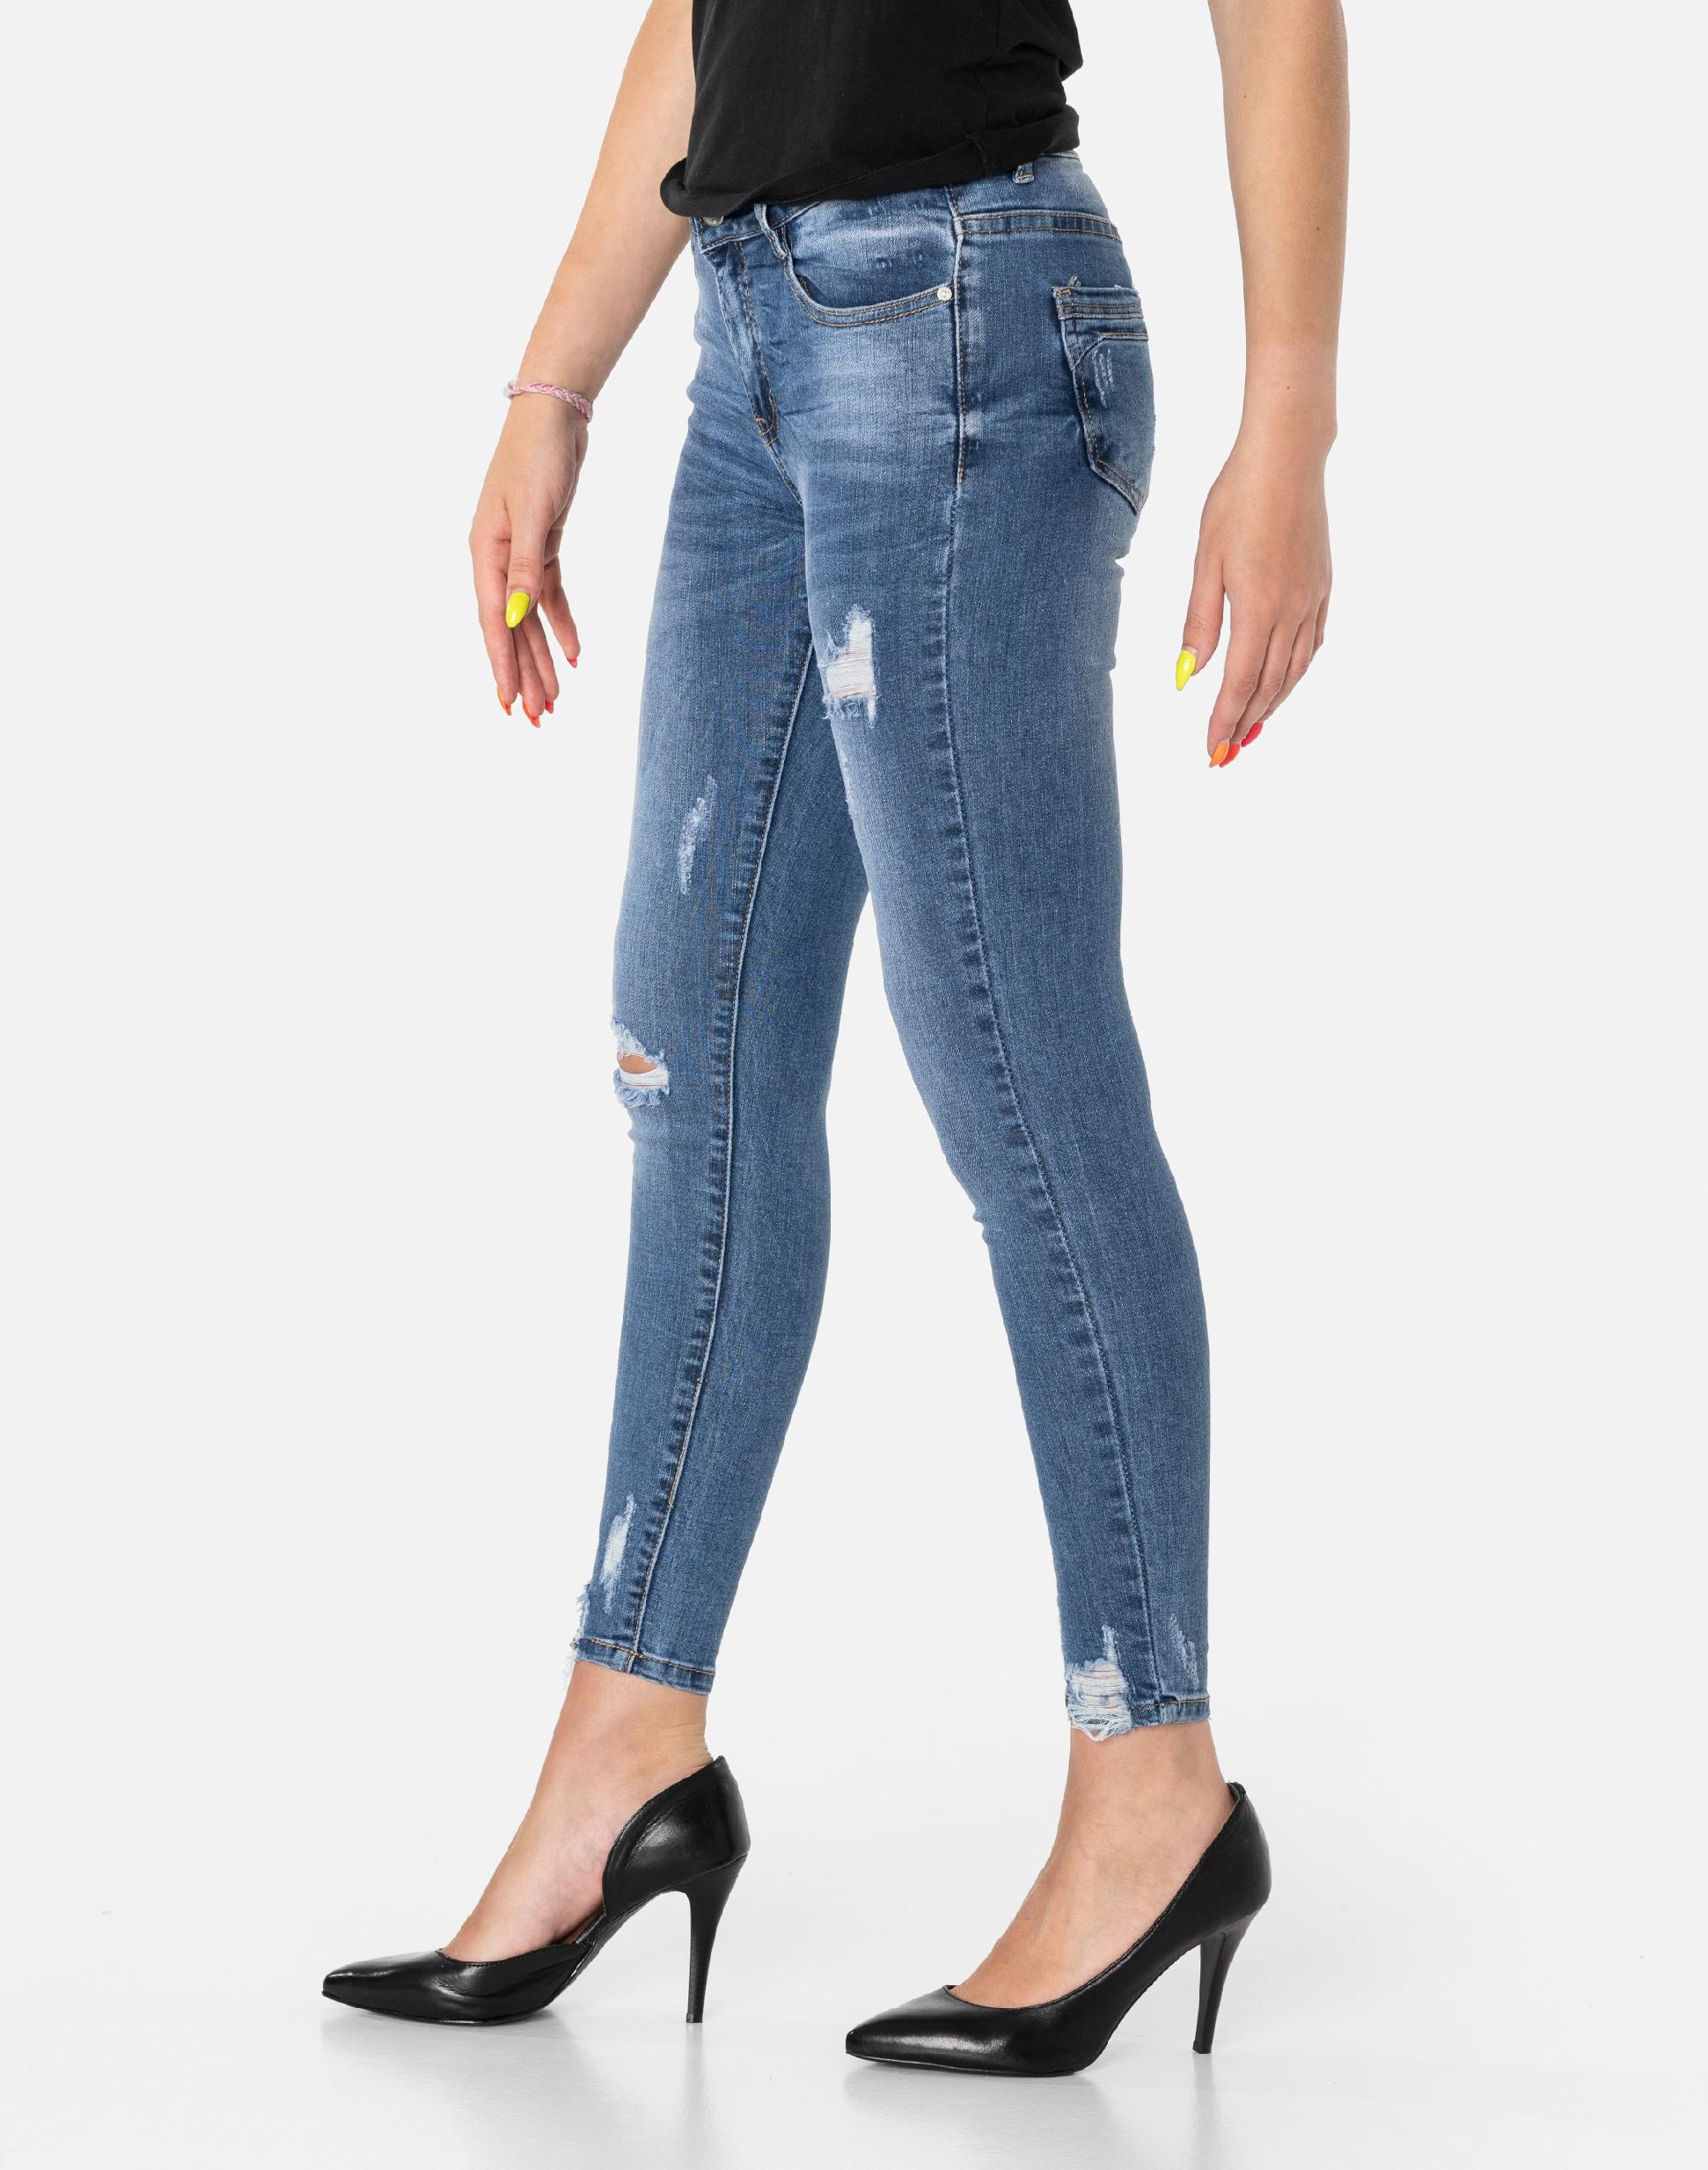 S5586 R 31 брюки Женские джинсы с отверстиями талия высота 25 см